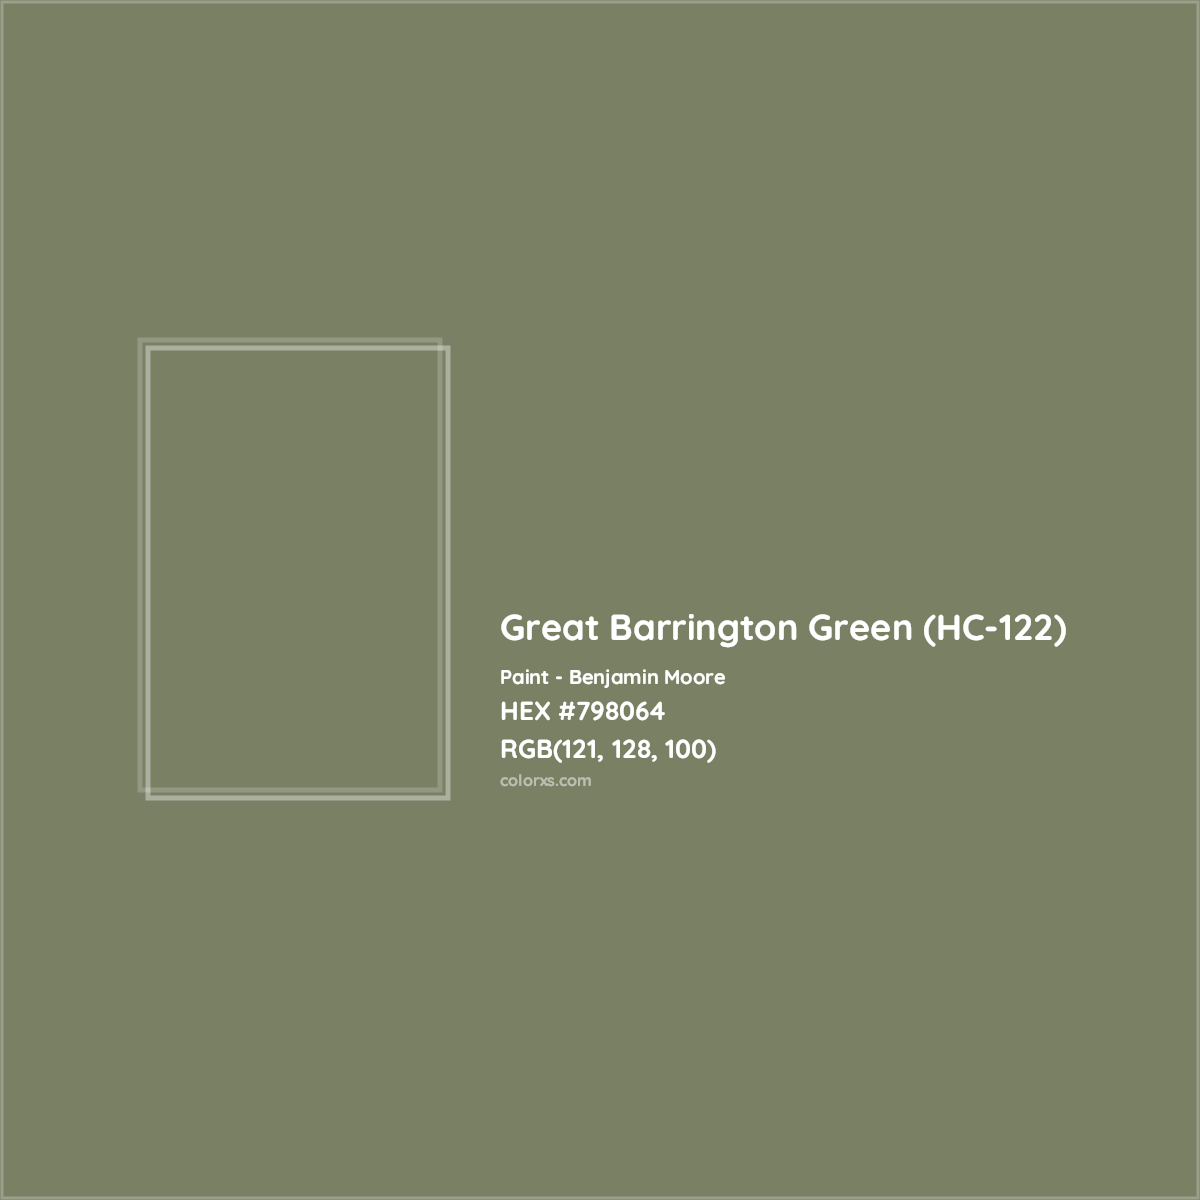 HEX #798064 Great Barrington Green (HC-122) Paint Benjamin Moore - Color Code